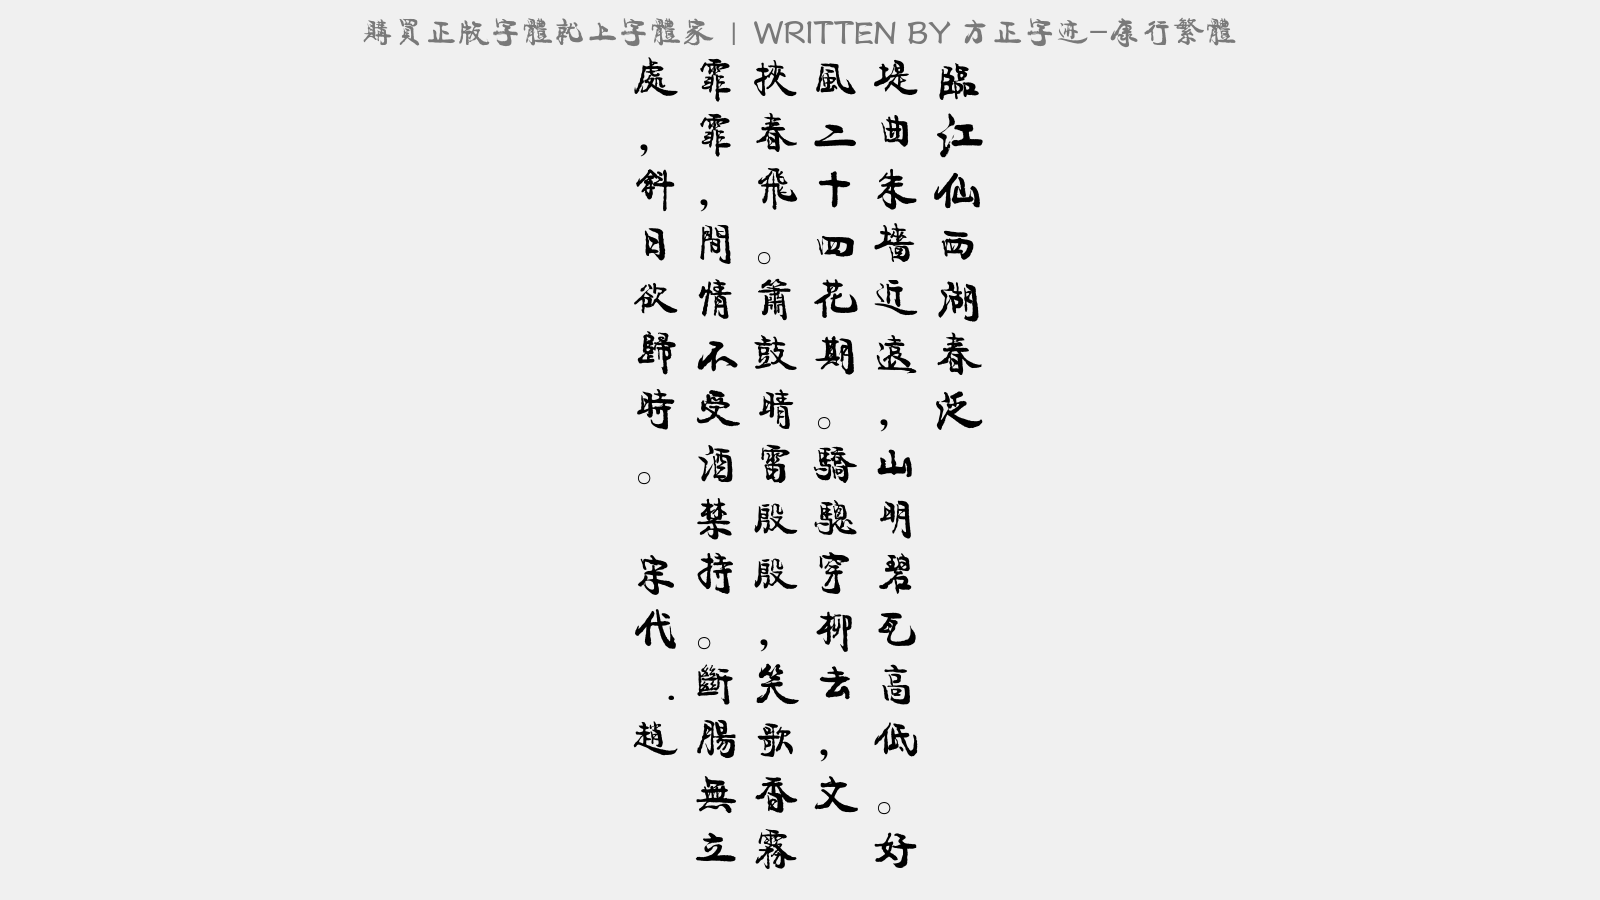 方正字迹 康行繁体免费字体下载 中文字体免费下载尽在字体家